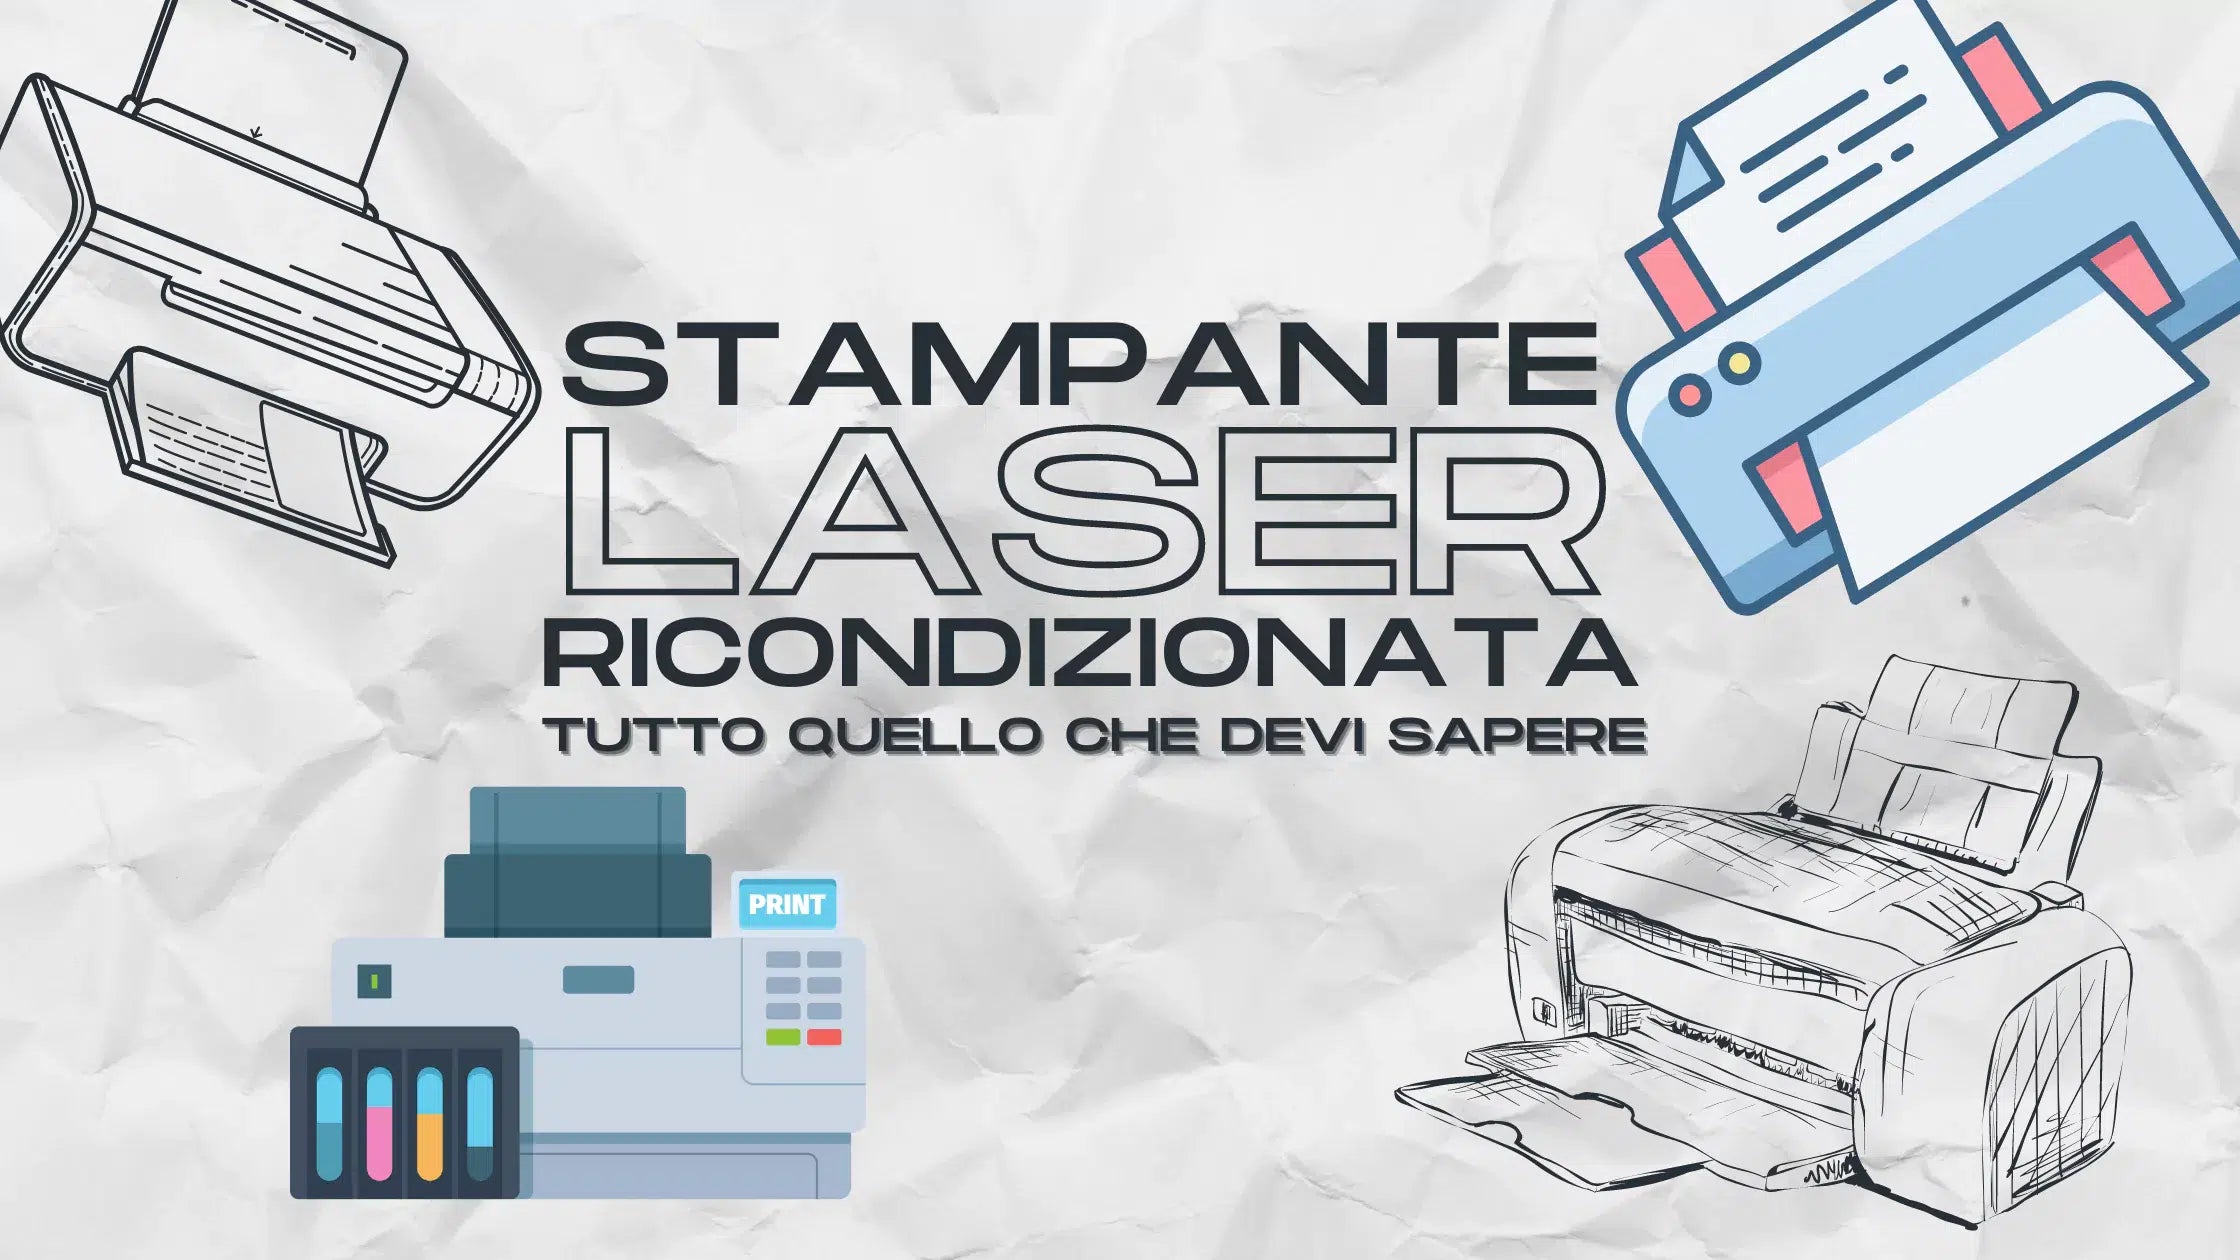 Stampante Laser Ricondizionata: Guida all'Acquisto su